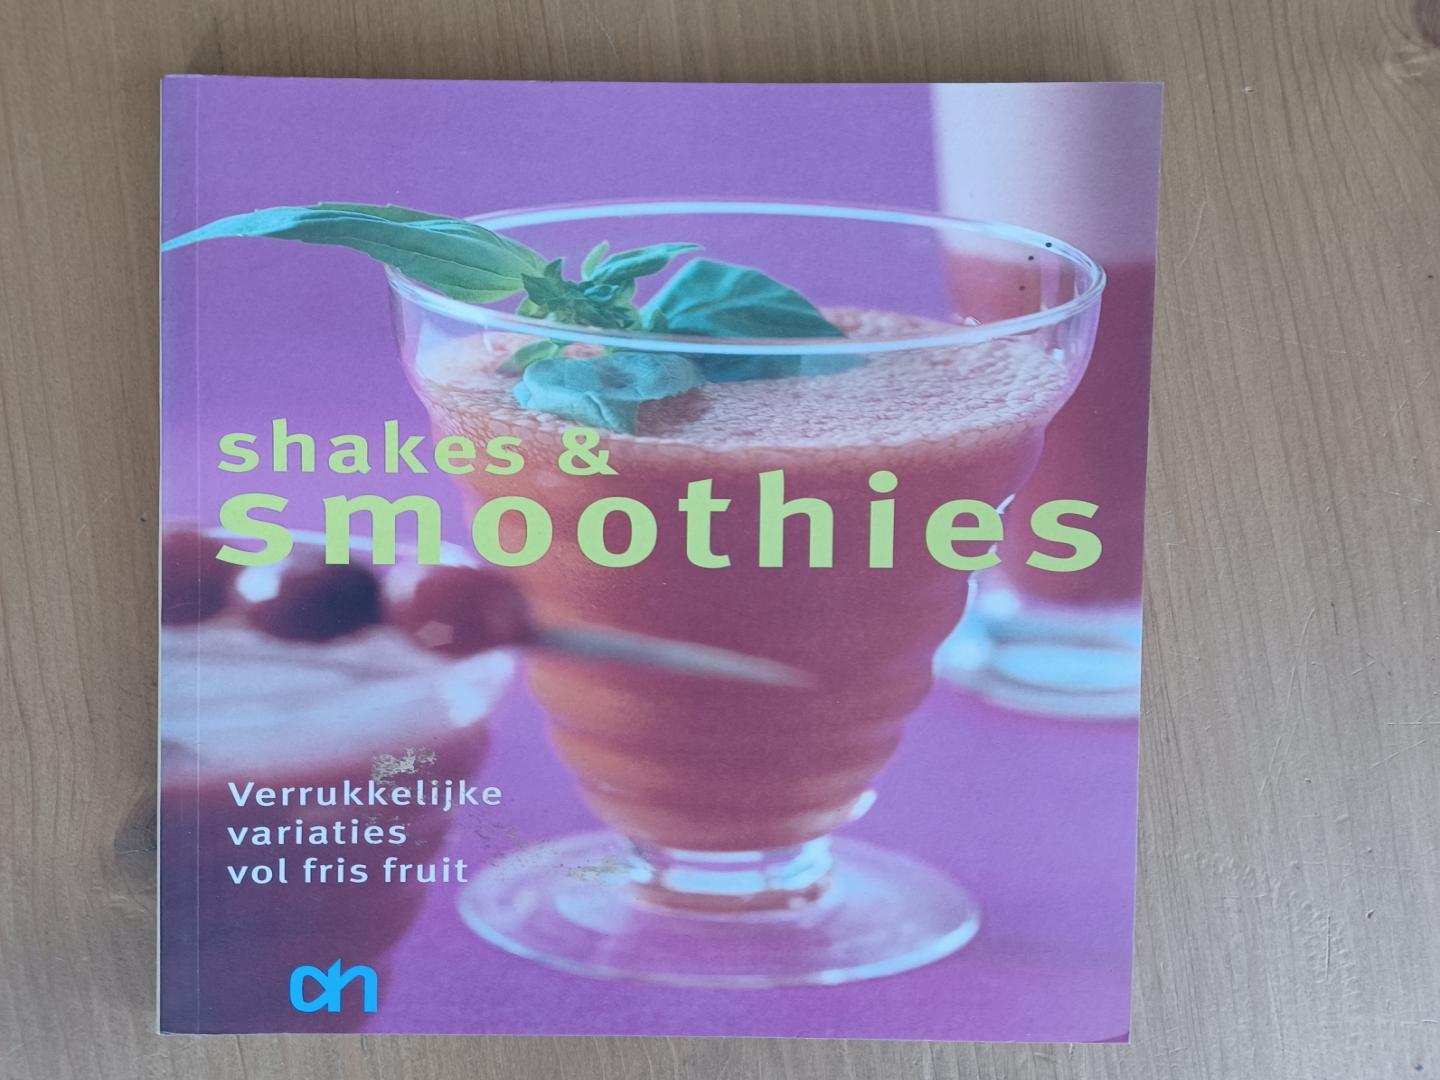 Ammerlaan, Anneke - Shakes & smoothies - verrukkelijke variaties vol fris fruit